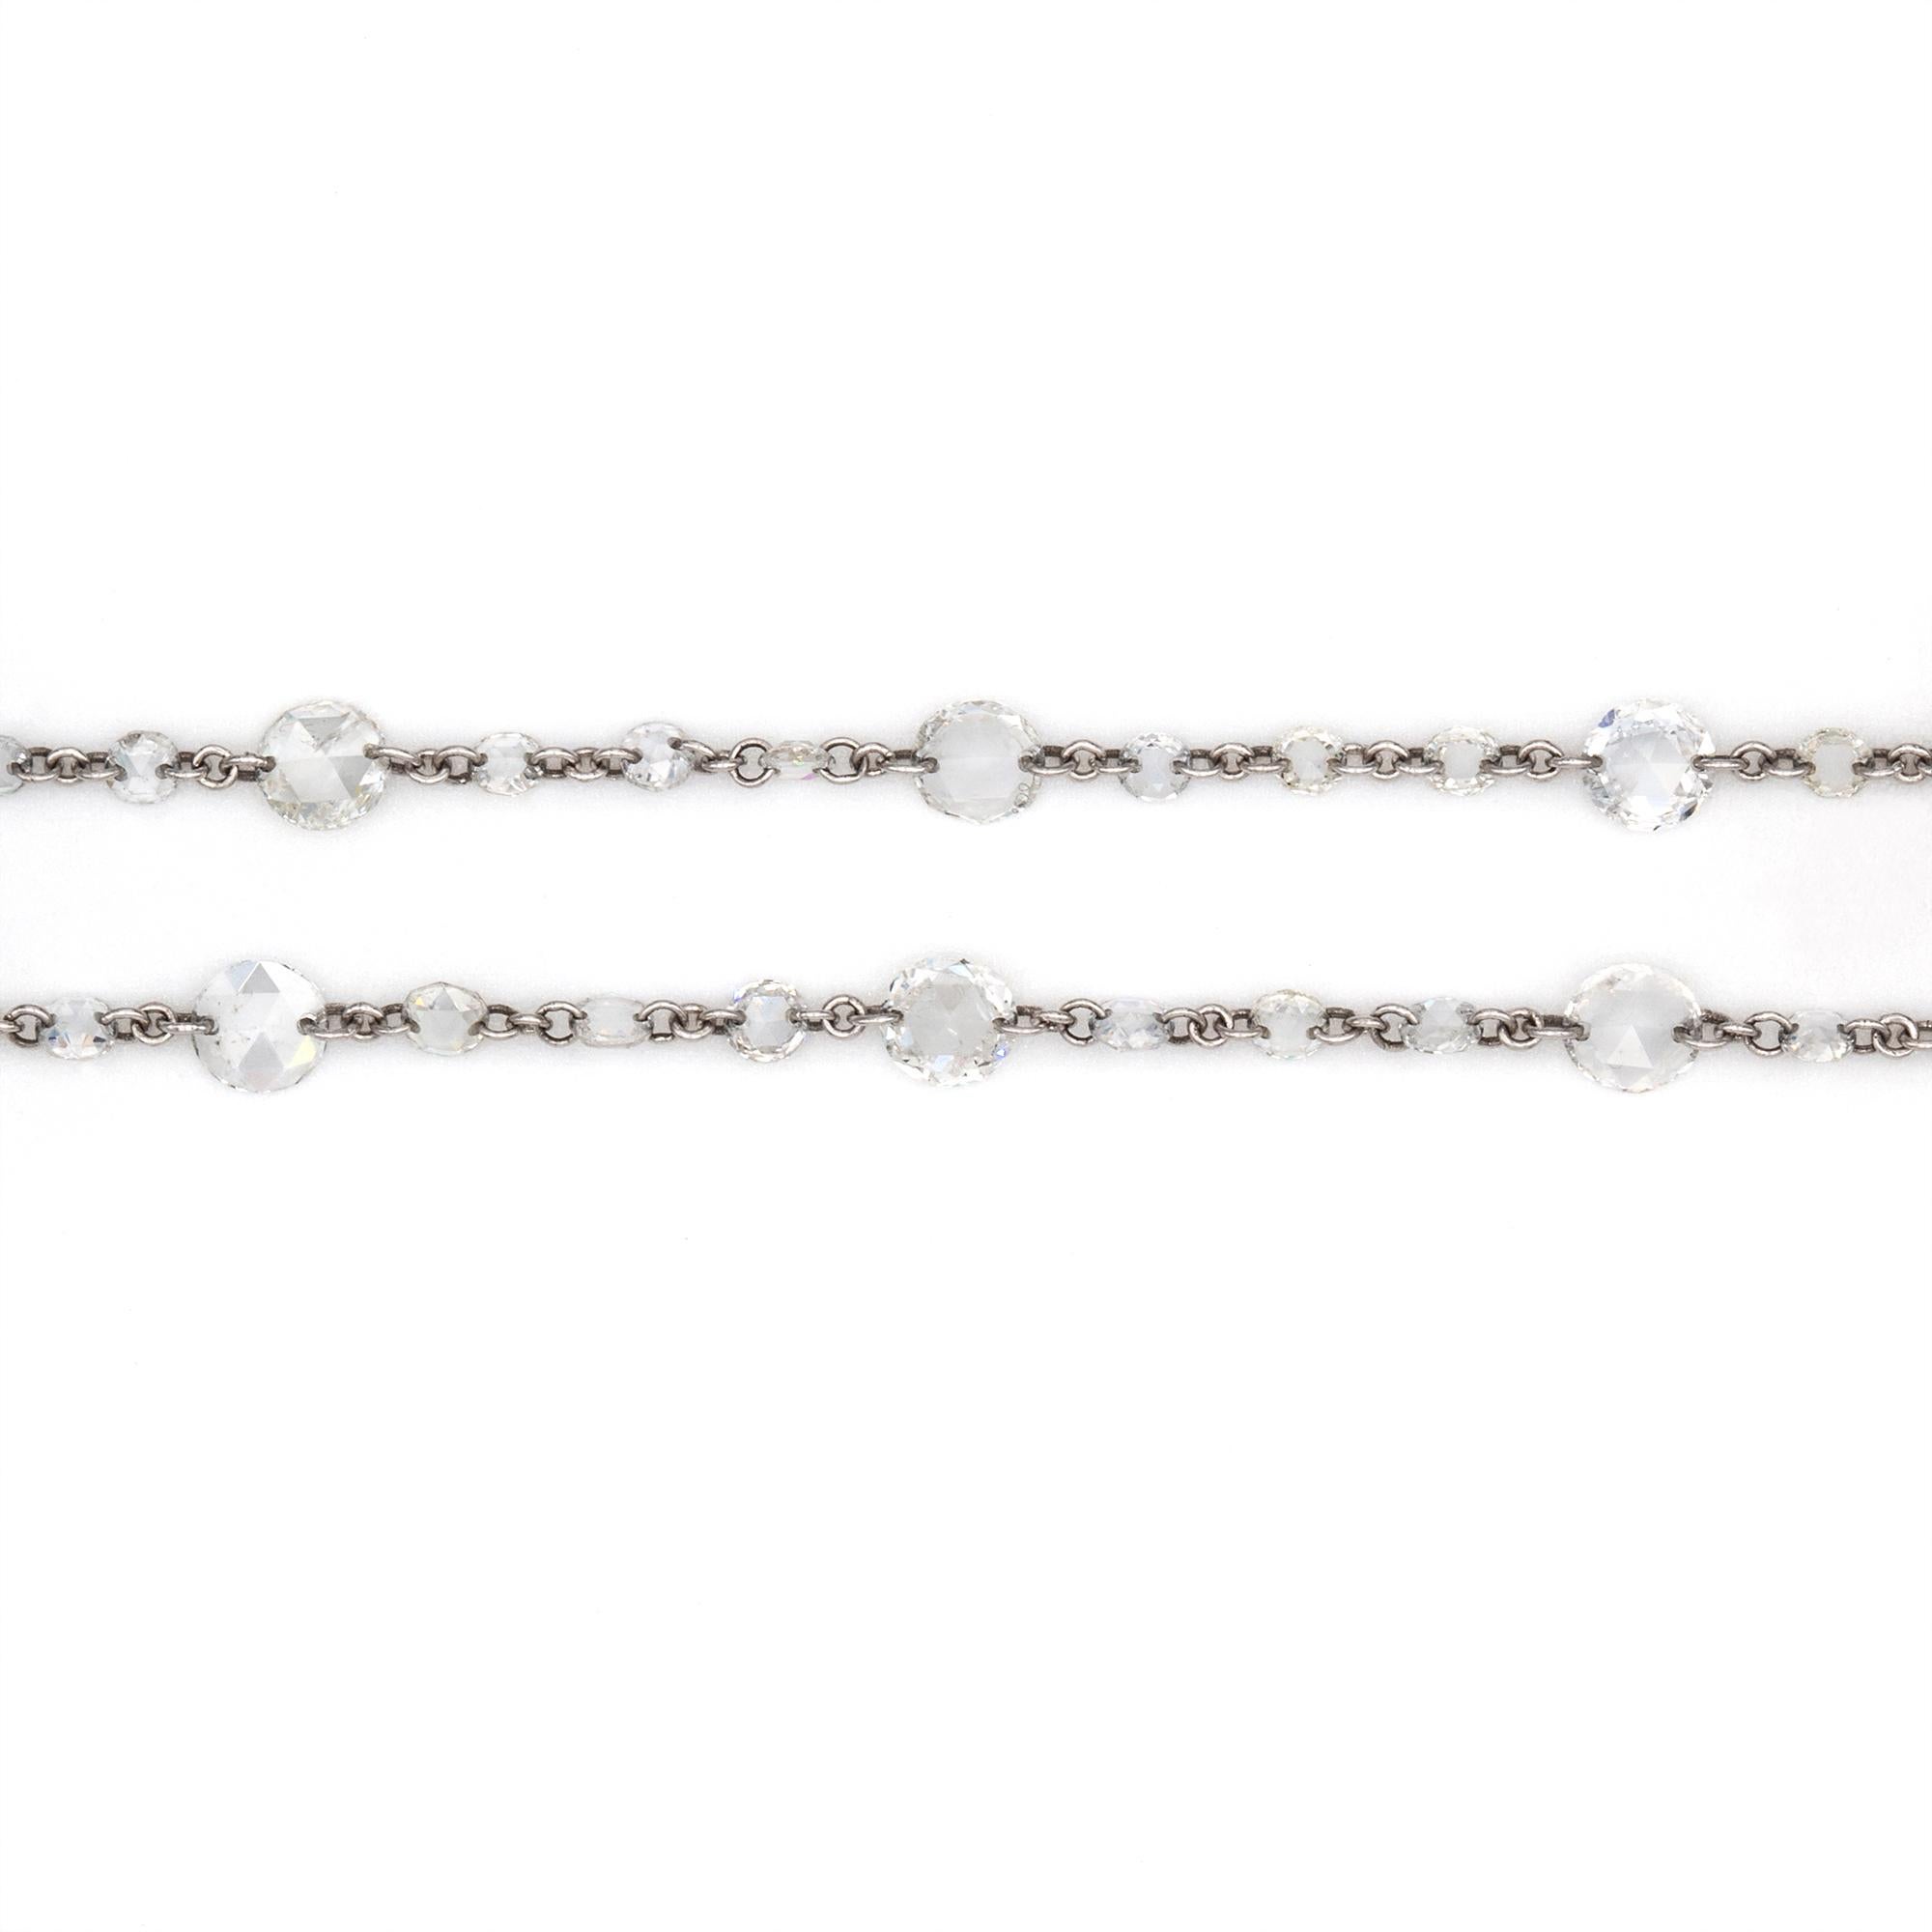 AA-Kette mit Diamanten im Rosenschliff, einhundertfünfundneunzig Diamanten im Rosenschliff mit einem Gesamtgewicht von 11,06 Karat, verbunden mit Gliedern aus Platin an einem Karabinerverschluss aus Platin, gepunzt auf Platin, London 2019, mit der